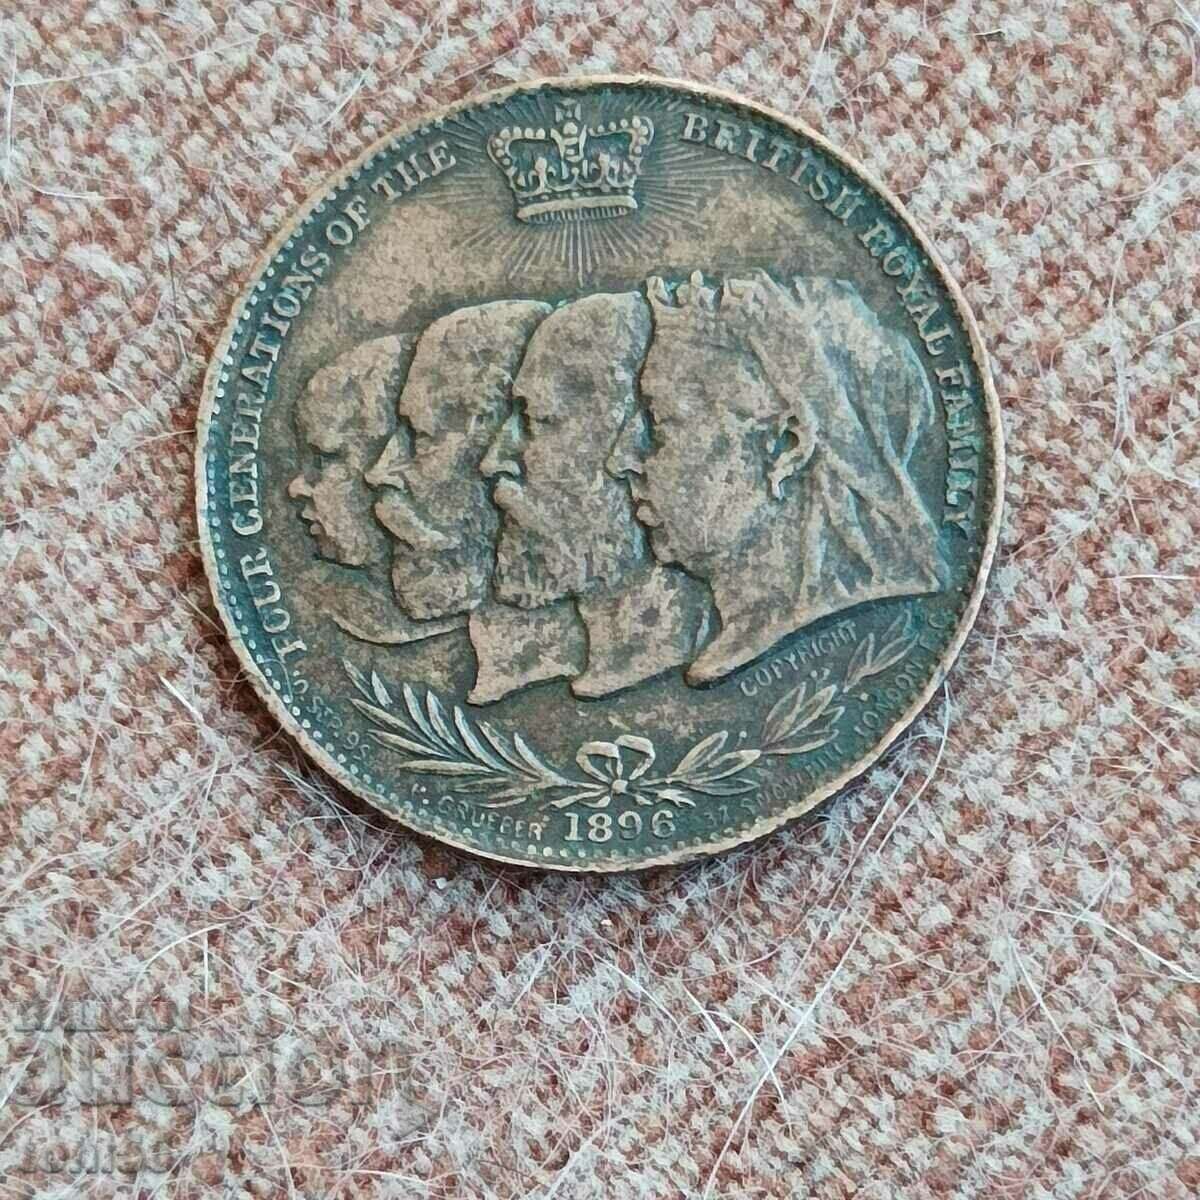 England - token 1896 (see description)